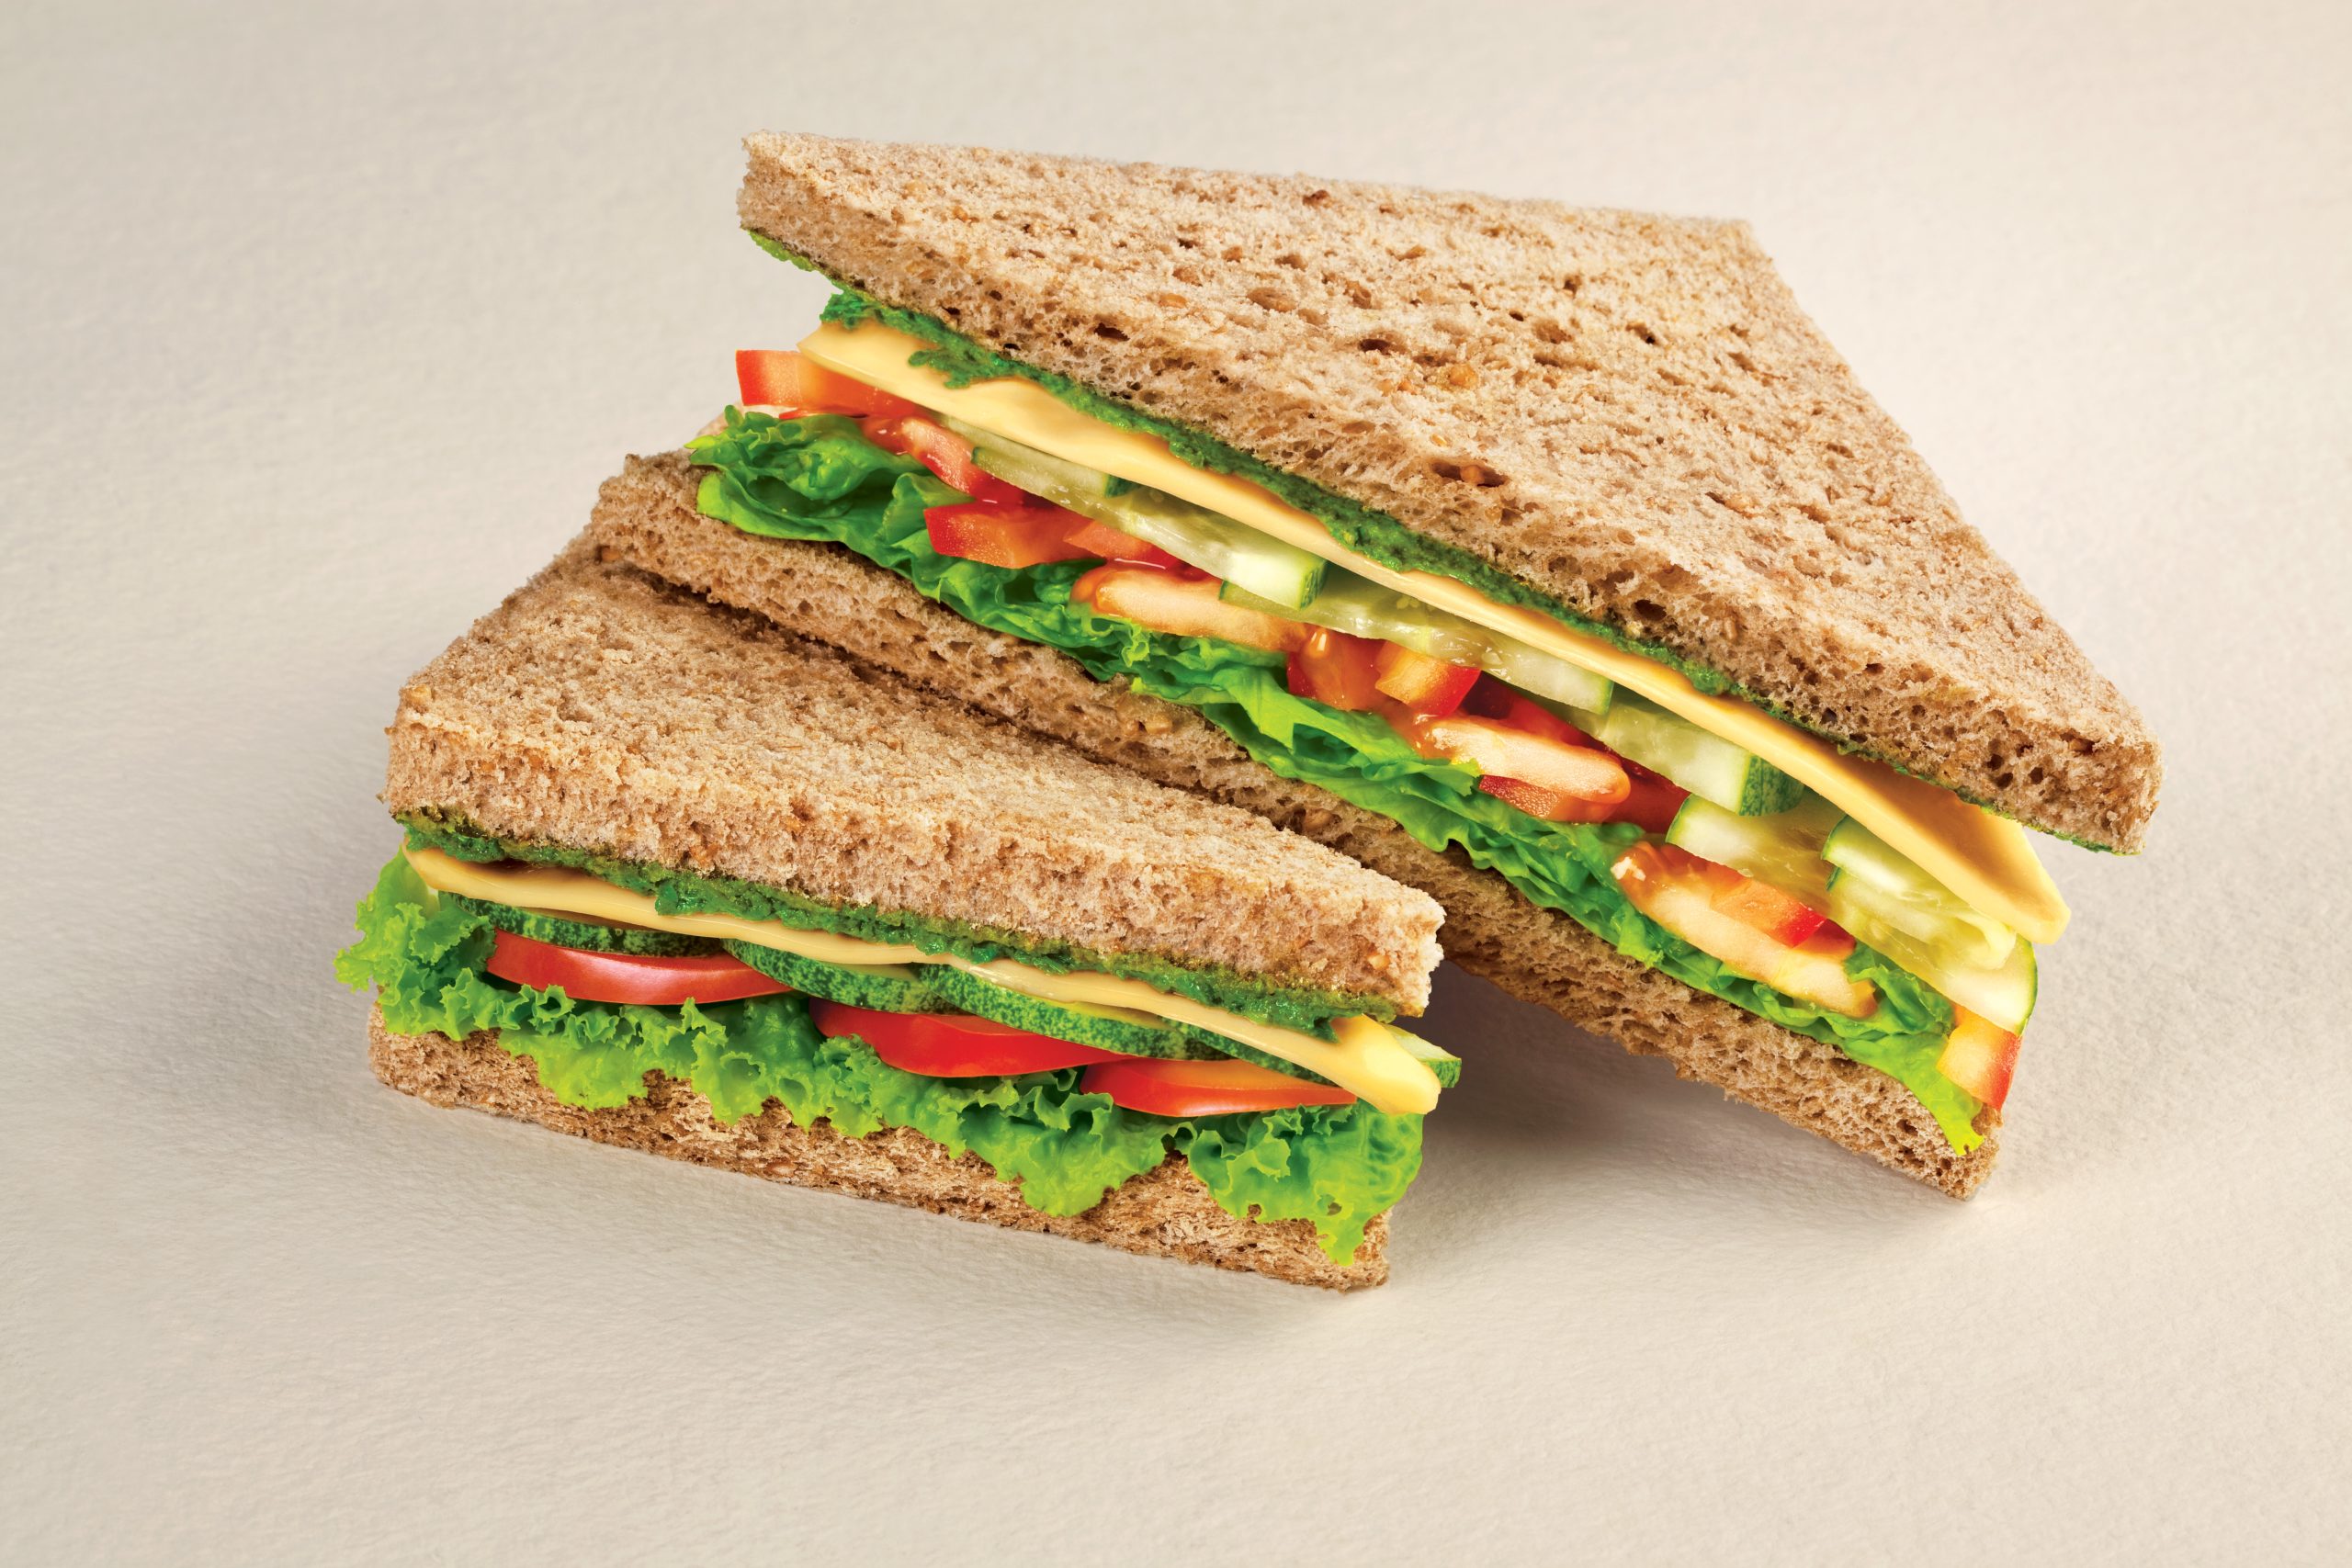 Unique and creative sandwich combinations